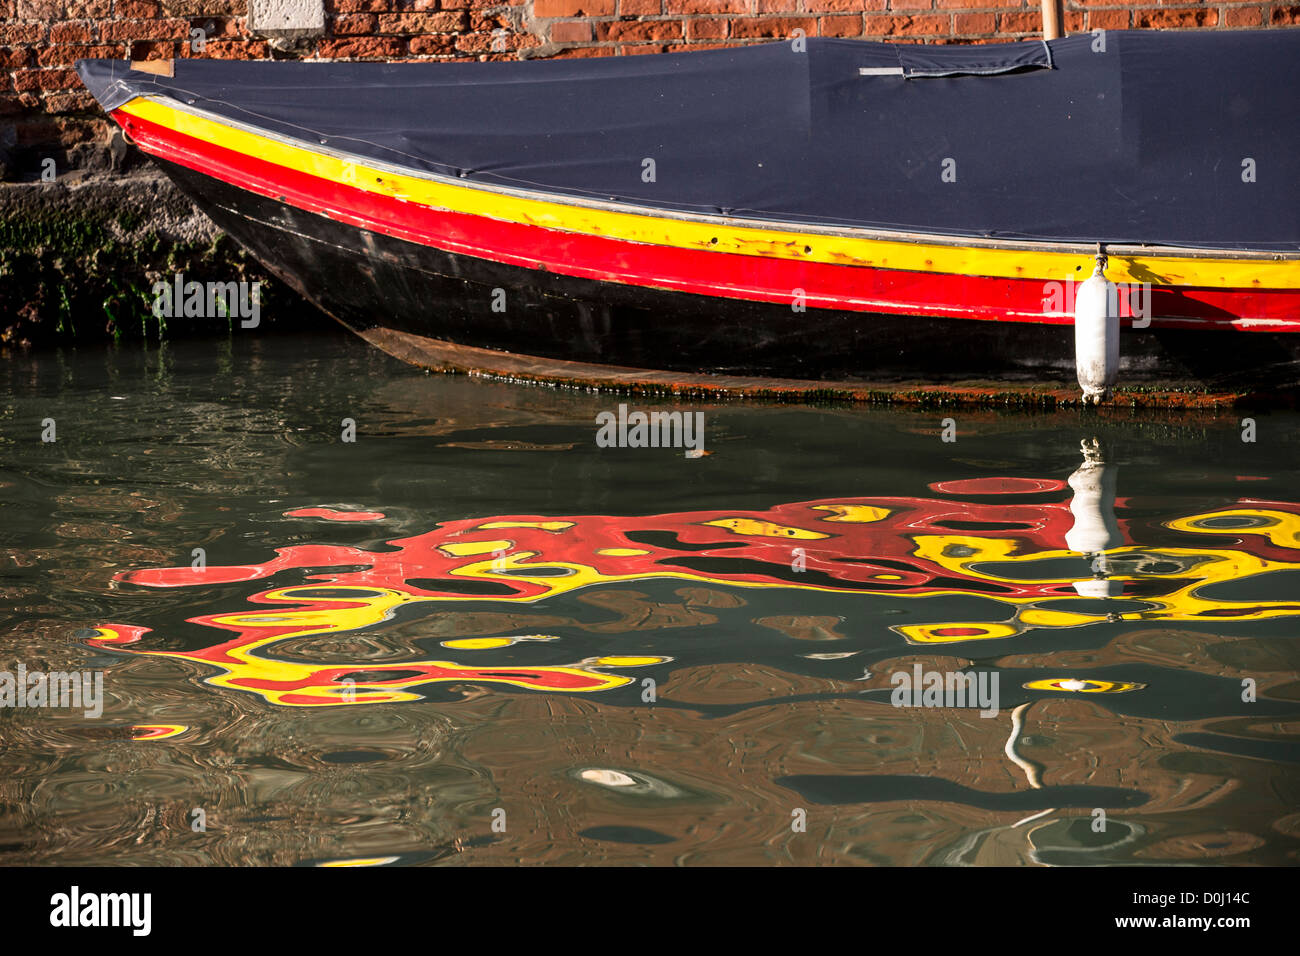 Dettaglio della prua di una piccola barca verniciato nei colori della bandiera tedesca e il suo riflesso distorto in acqua increspata Foto Stock